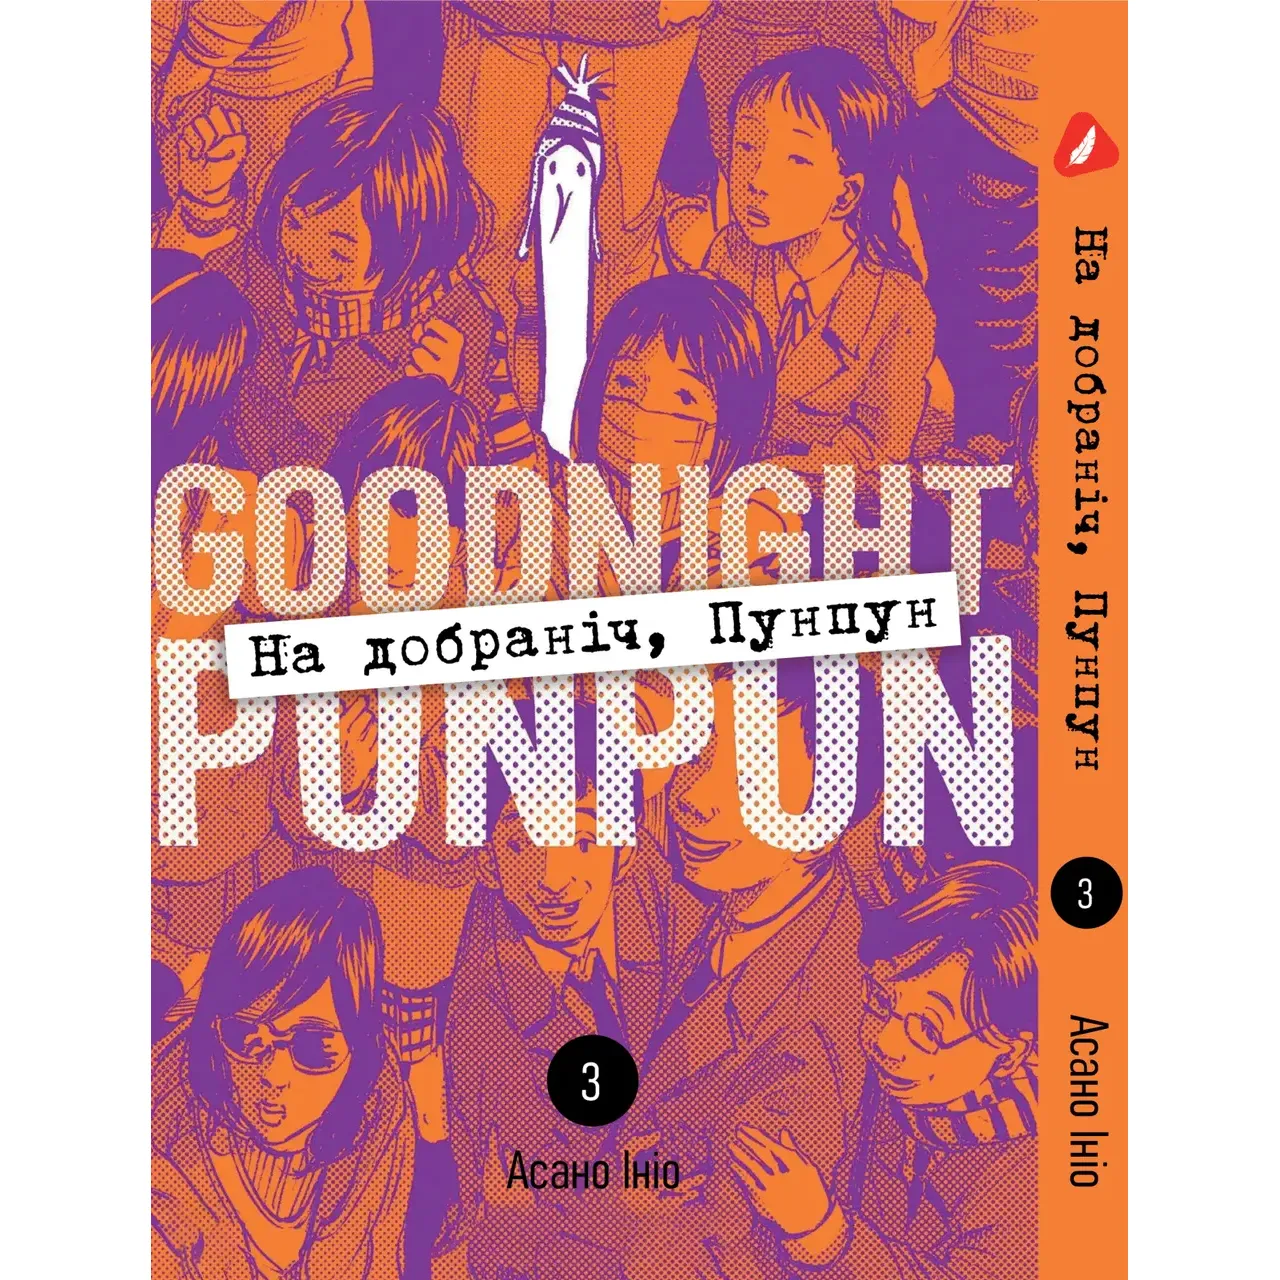 Комплект манґи Yohoho Print Goodnight Punpun На добраніч Пунпун Том з 1 - 5 YP GP K 01 - Асано Ініо (1832373405.0) - фото 4